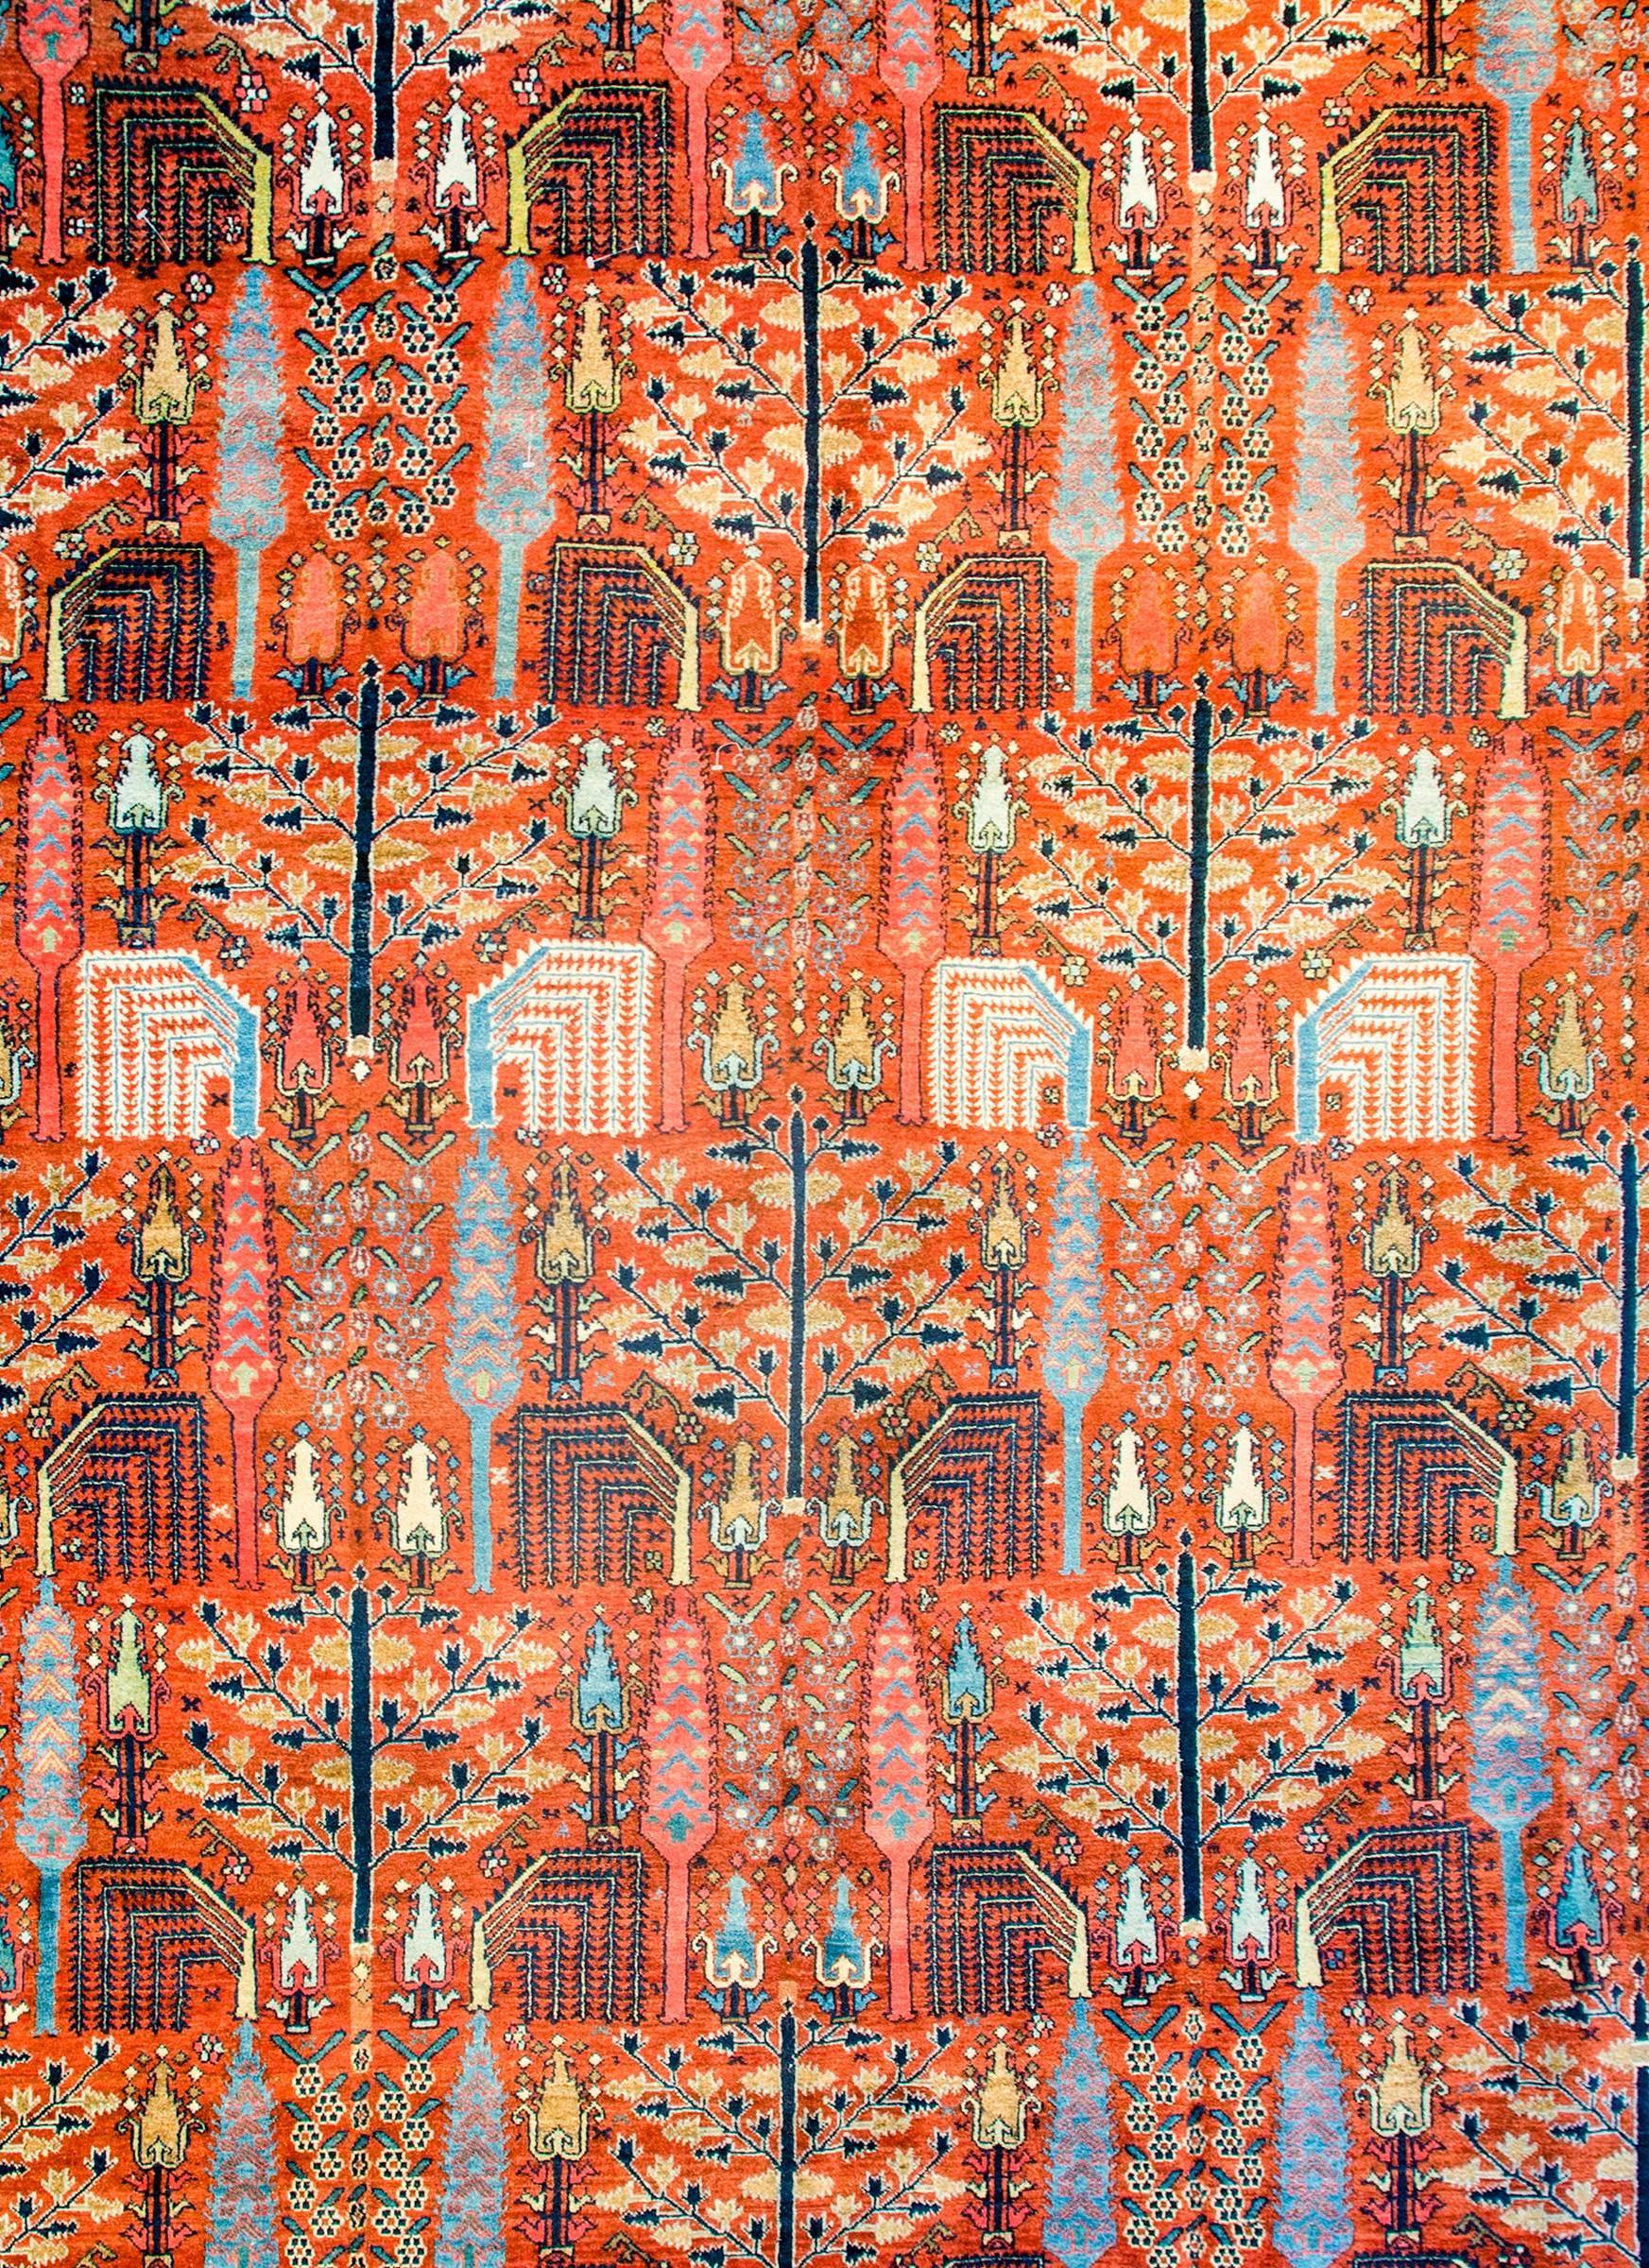 Ein atemberaubender persischer Bidjar-Teppich aus dem frühen 20. Jahrhundert mit wiederkehrenden Weiden, Zypressen und anderen Bäumen des Lebens
muster aus indigo-, gold- und weißfarbener Wolle auf einem leuchtenden korallenfarbenen Hintergrund.